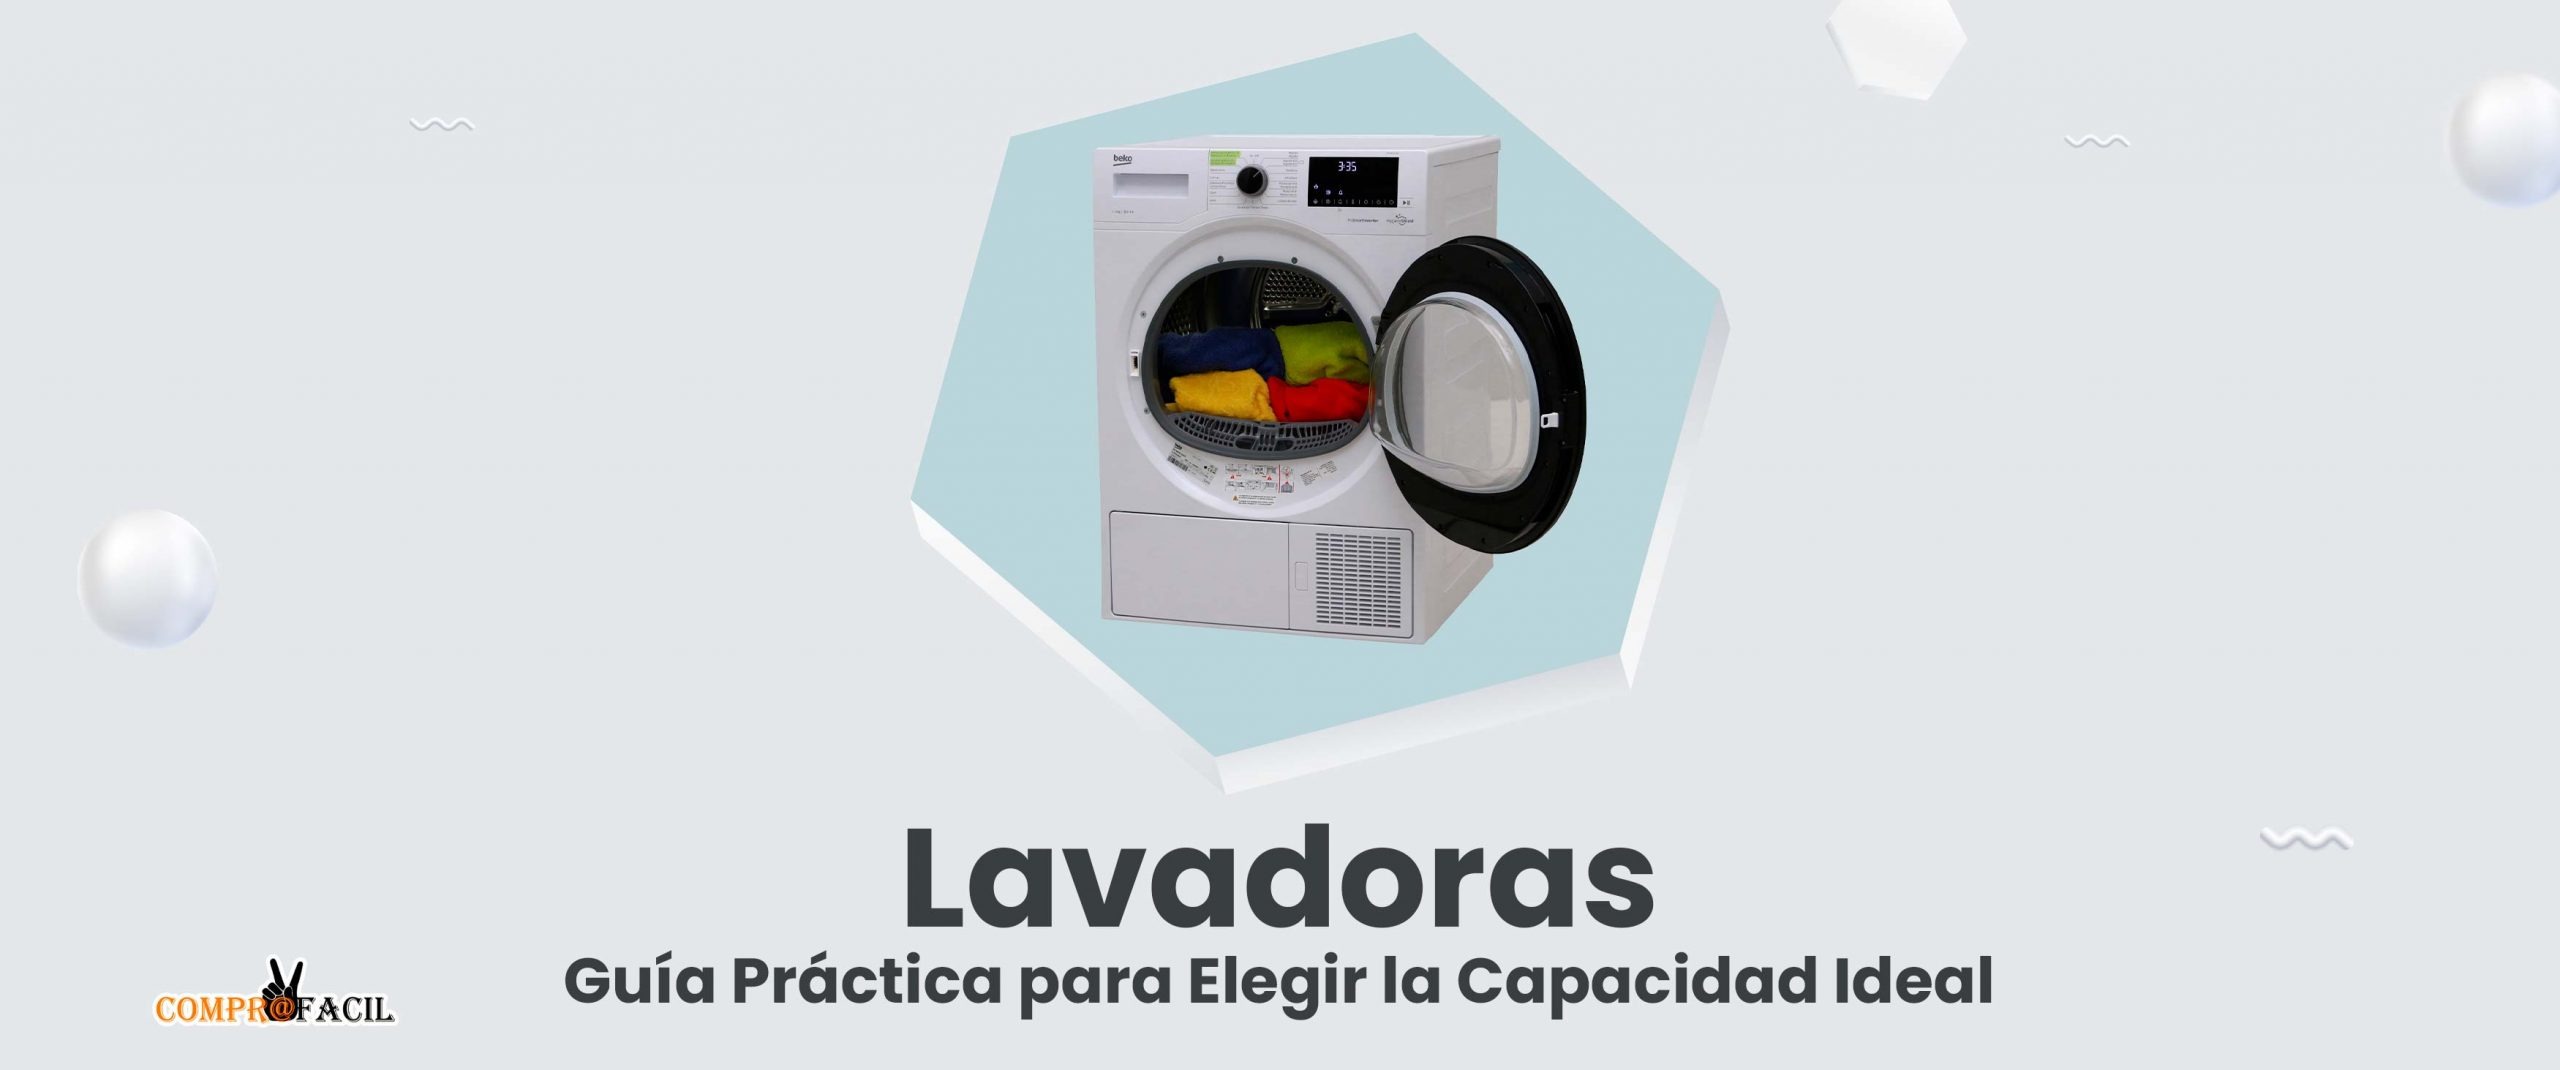 Lavadoras: Guía Práctica para Elegir la Capacidad Ideal